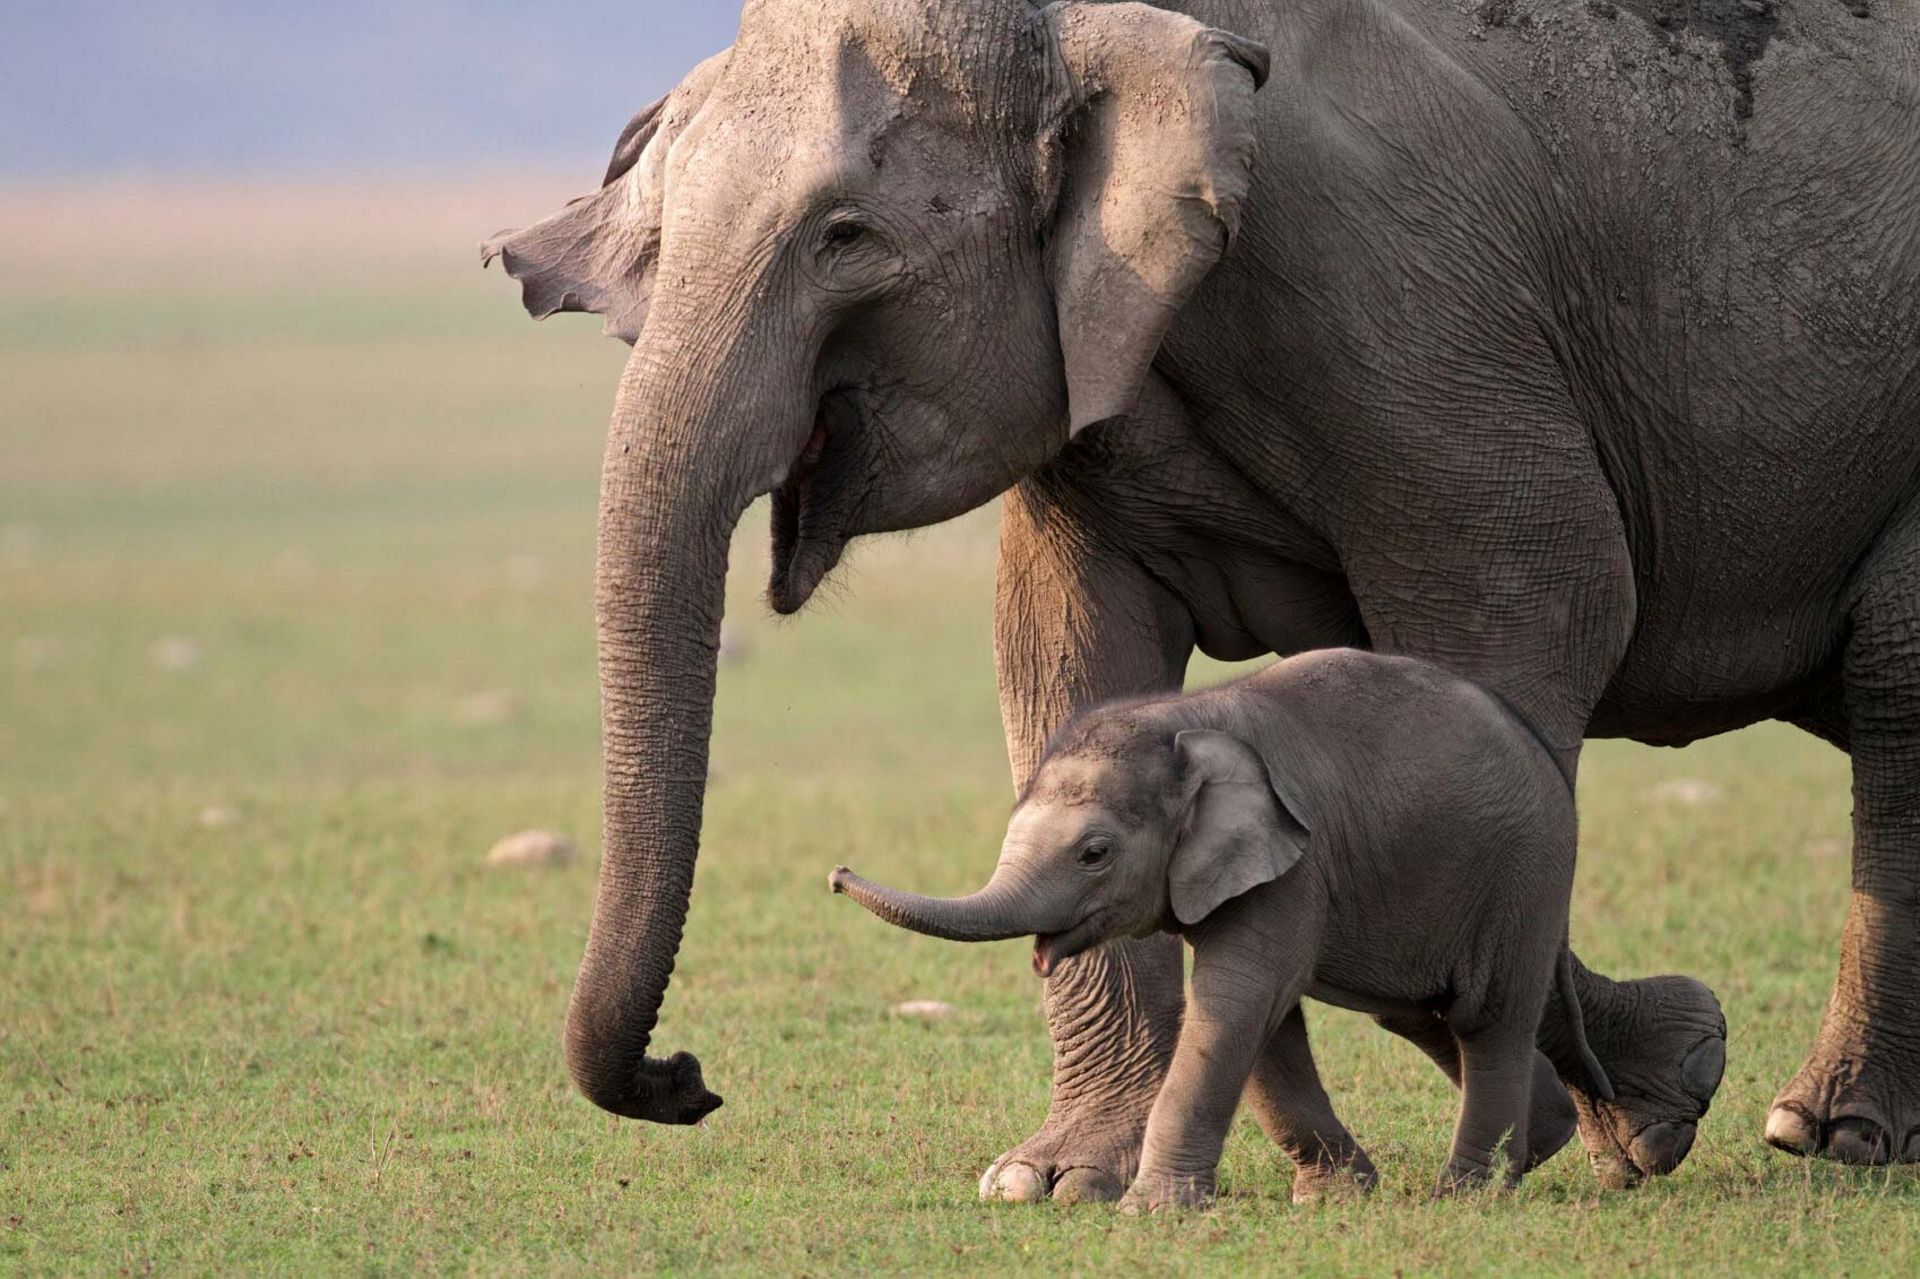 فیل بزرگسال در کنار بچه فیل